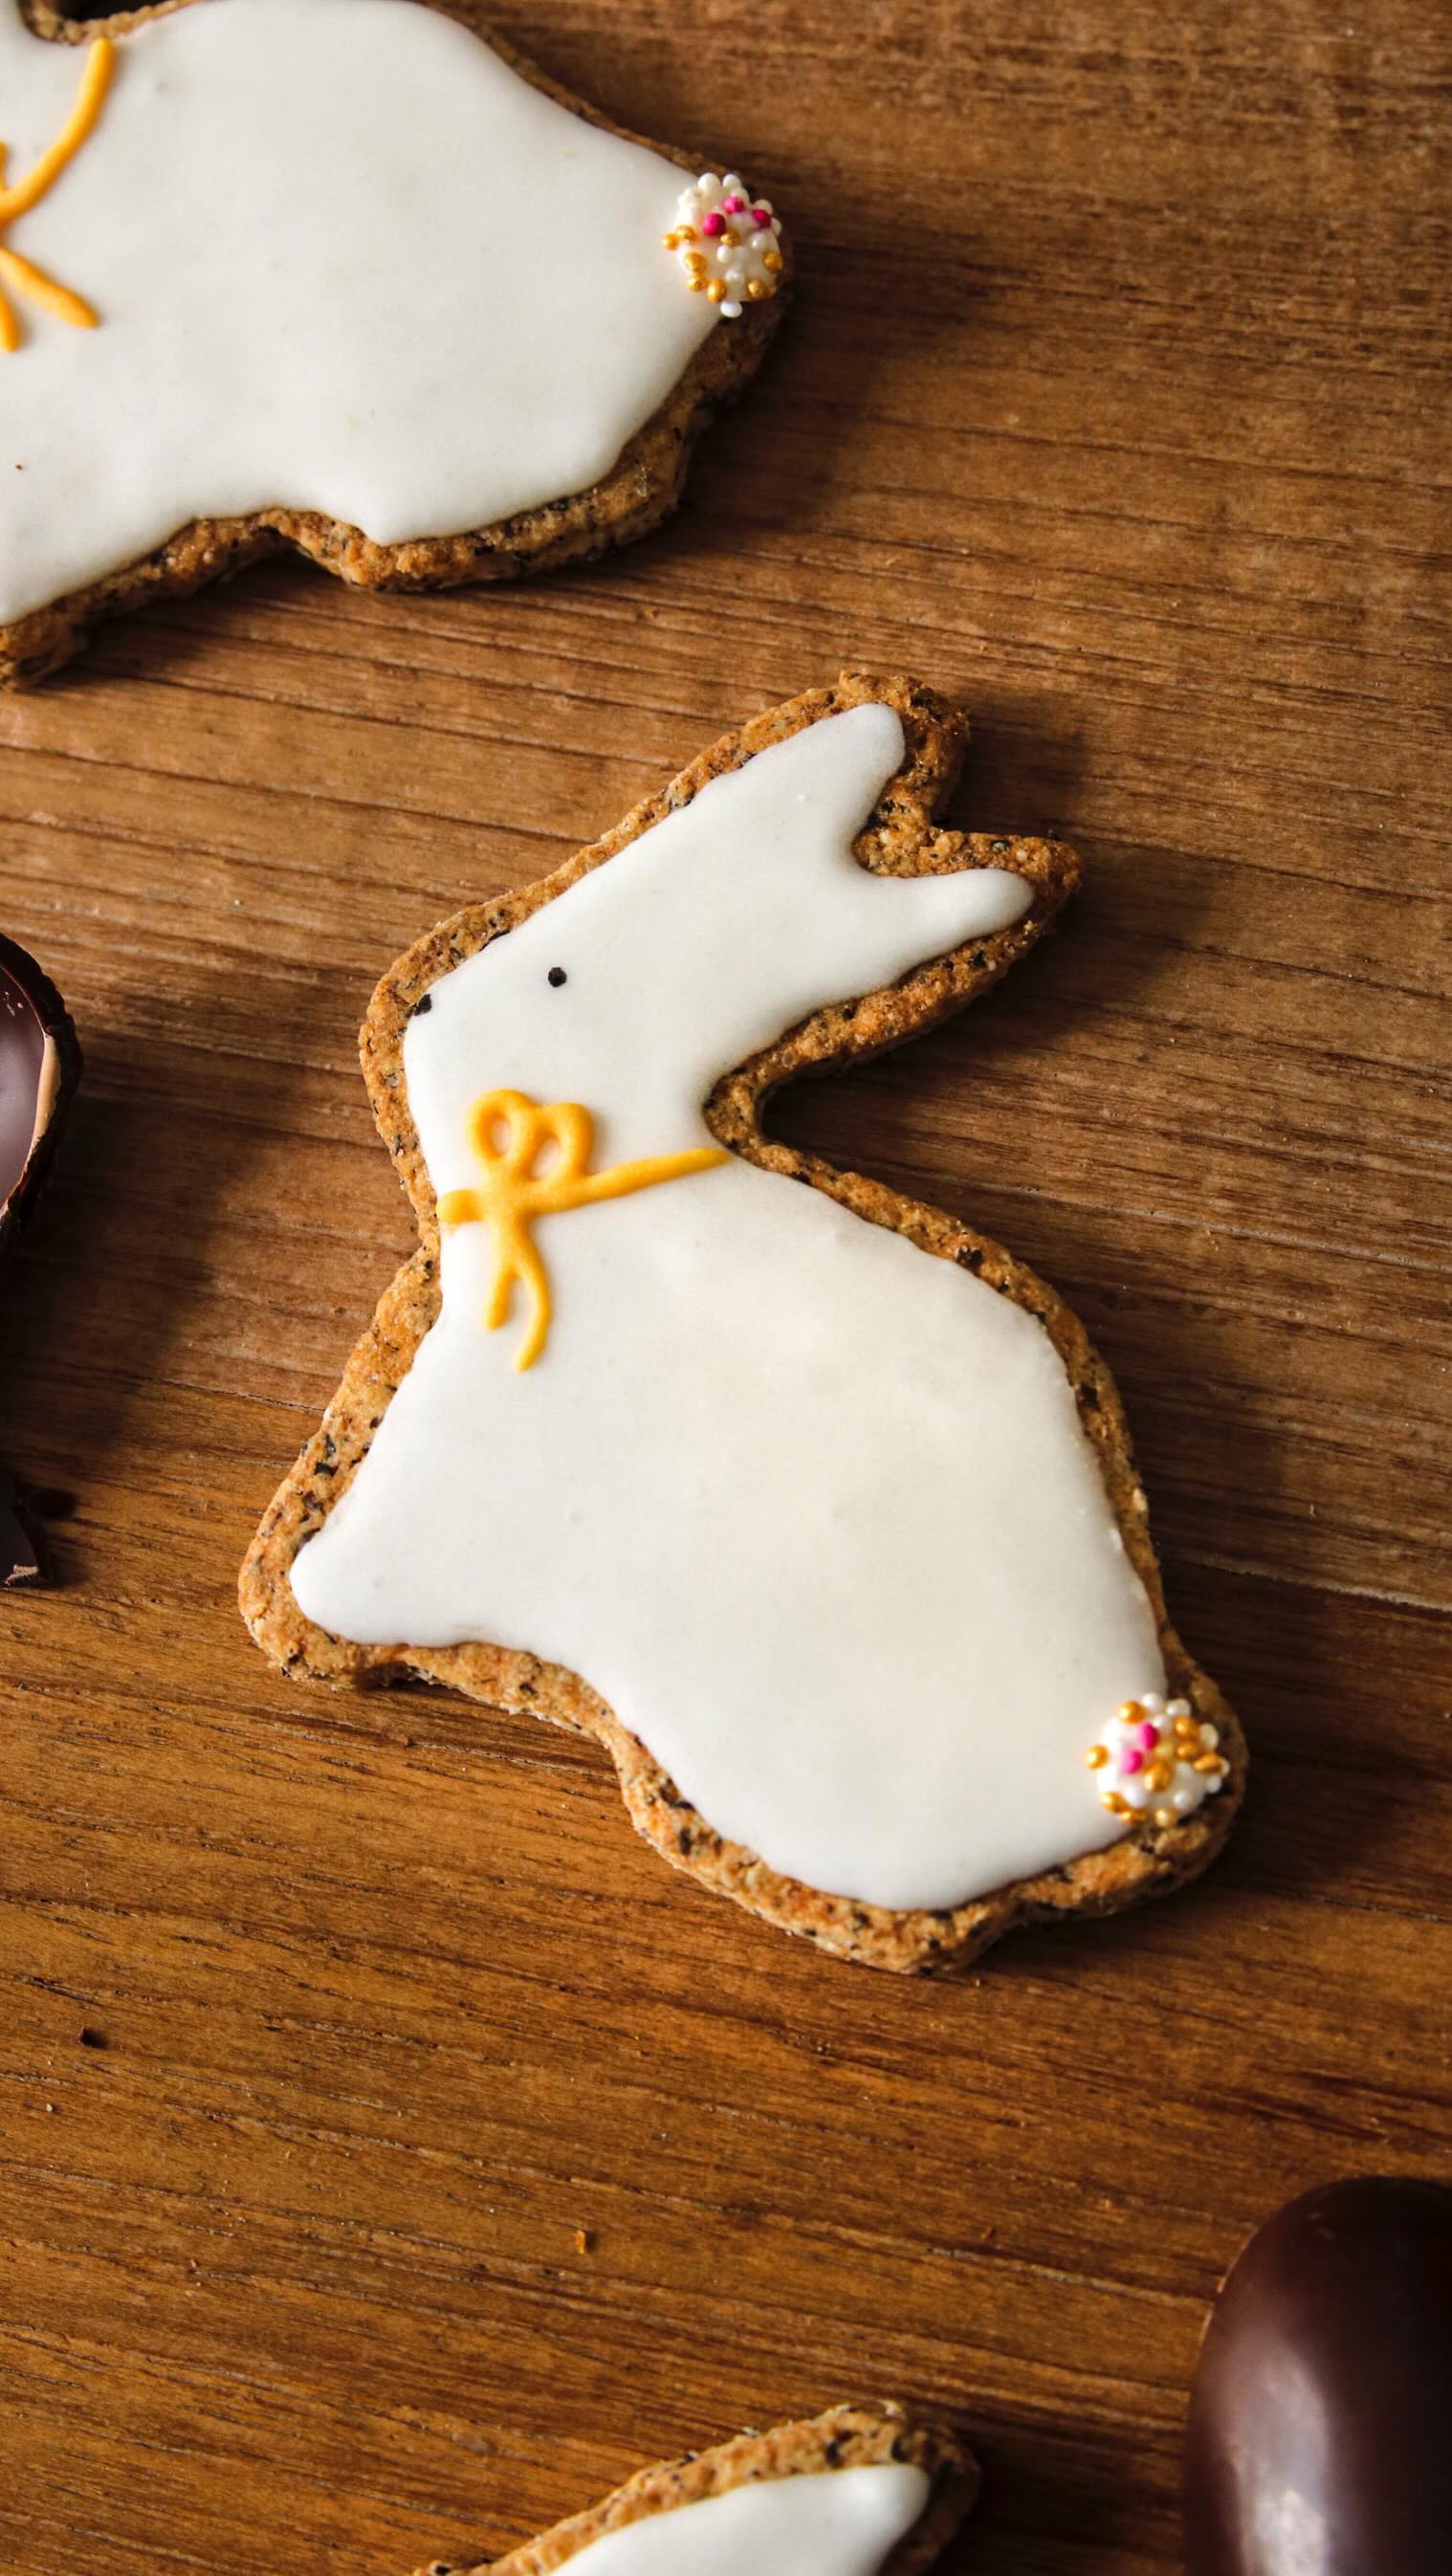 Mes petits biscuits « Lapin de Pâques » en accéléré ! 🎬 

Happy Easter everyone ! 🐣🐰

#pâques #happyeaster #joyeusespâques #paques2022 #cookiesdecorating #biscuitspersonnalisés #biscuitsdécorés #decoratingcookies #easterbunny #lapindepaques #biscuitsmaison